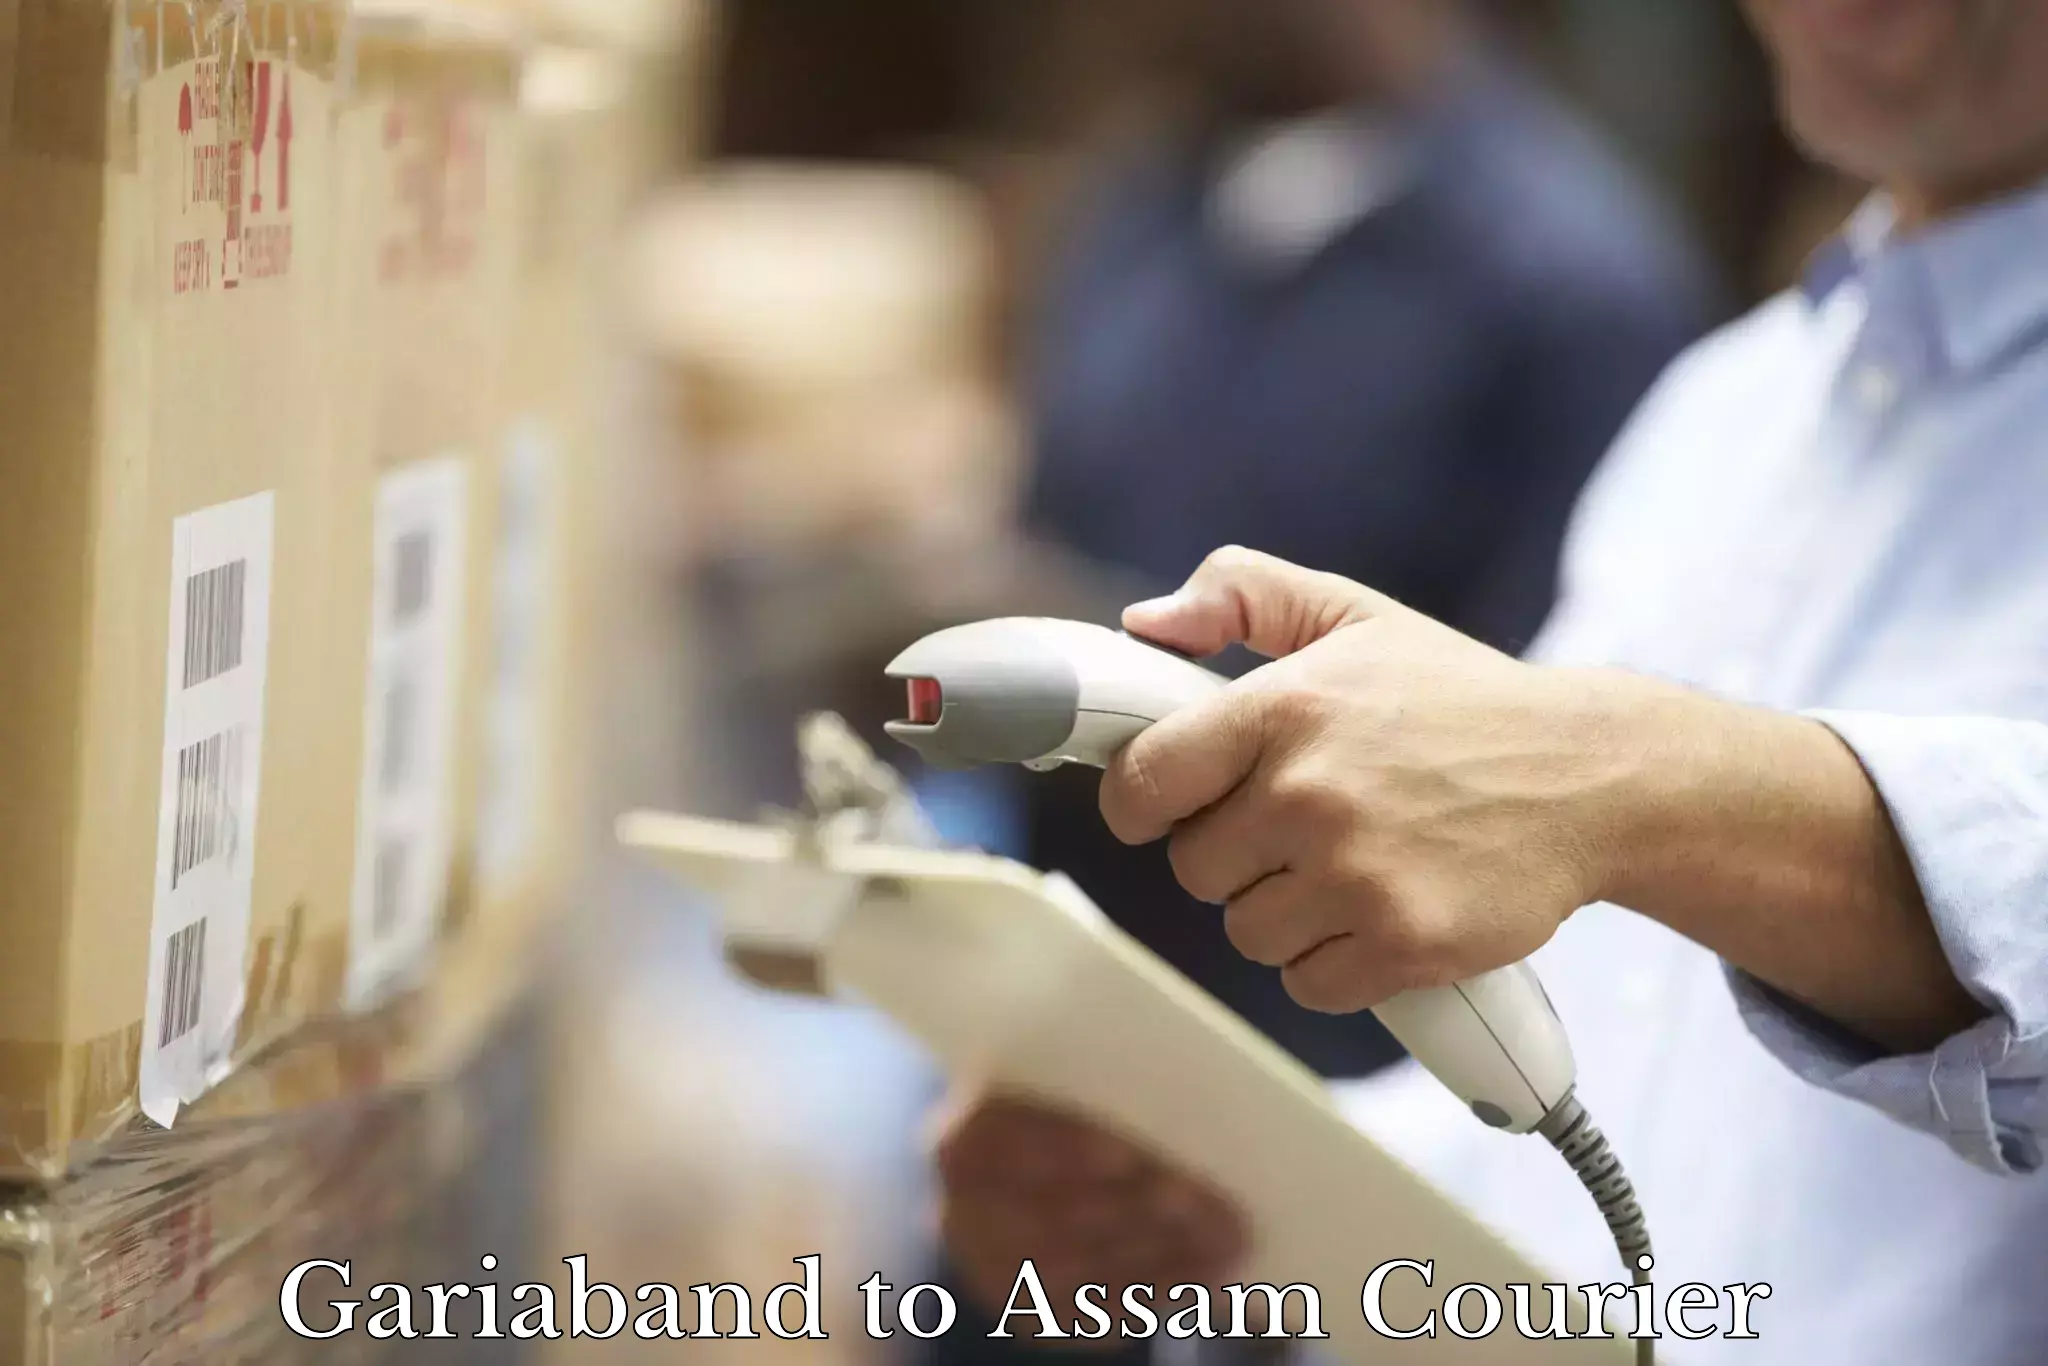 Reliable courier service Gariaband to Sivasagar